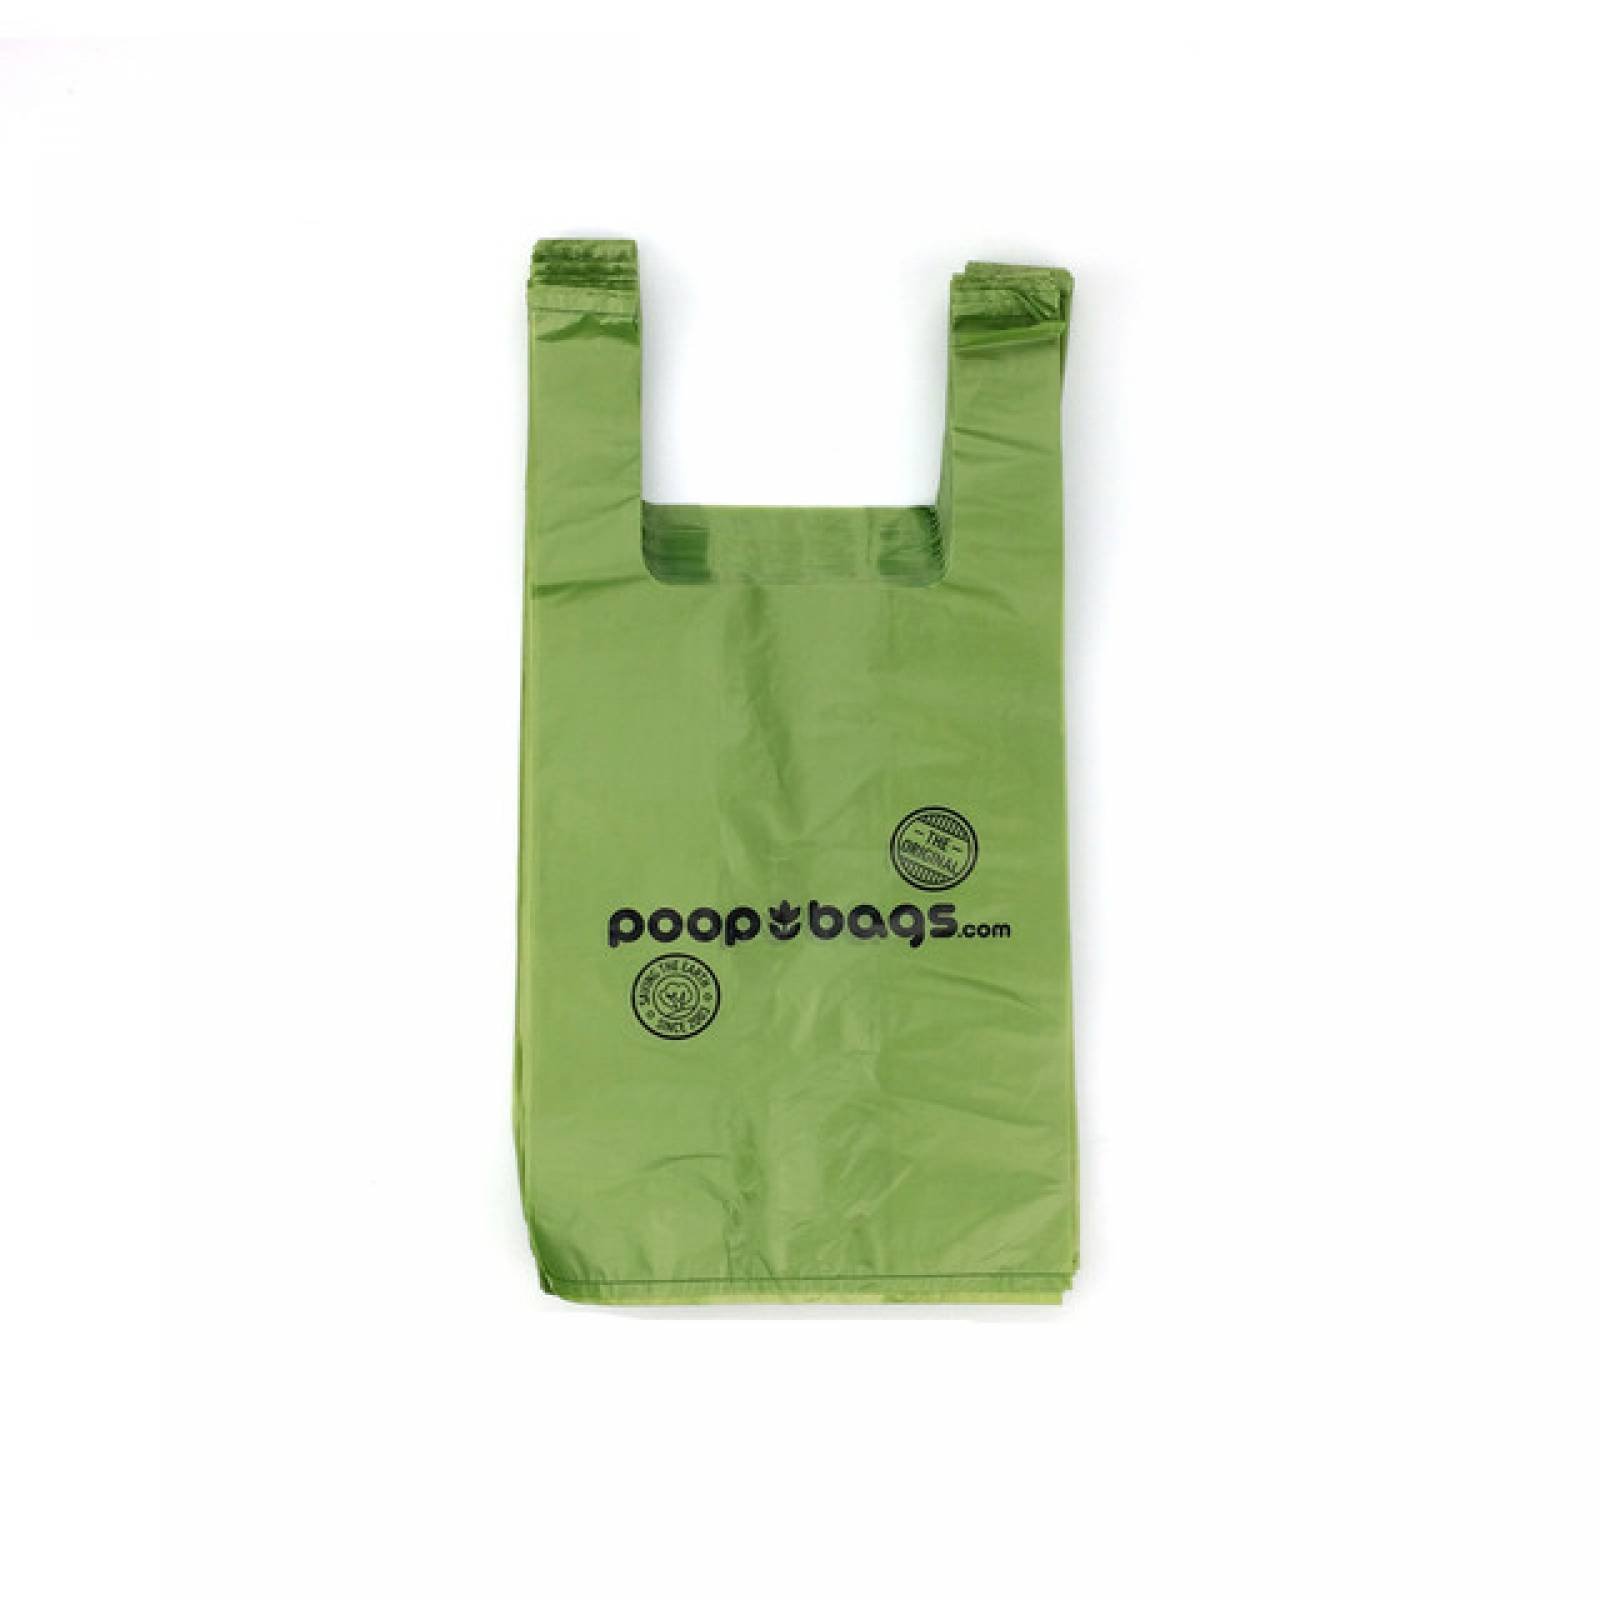 Poop Bags Bolsas biodegradables con Asas para desechos de perro. Incluye 120 bolsas